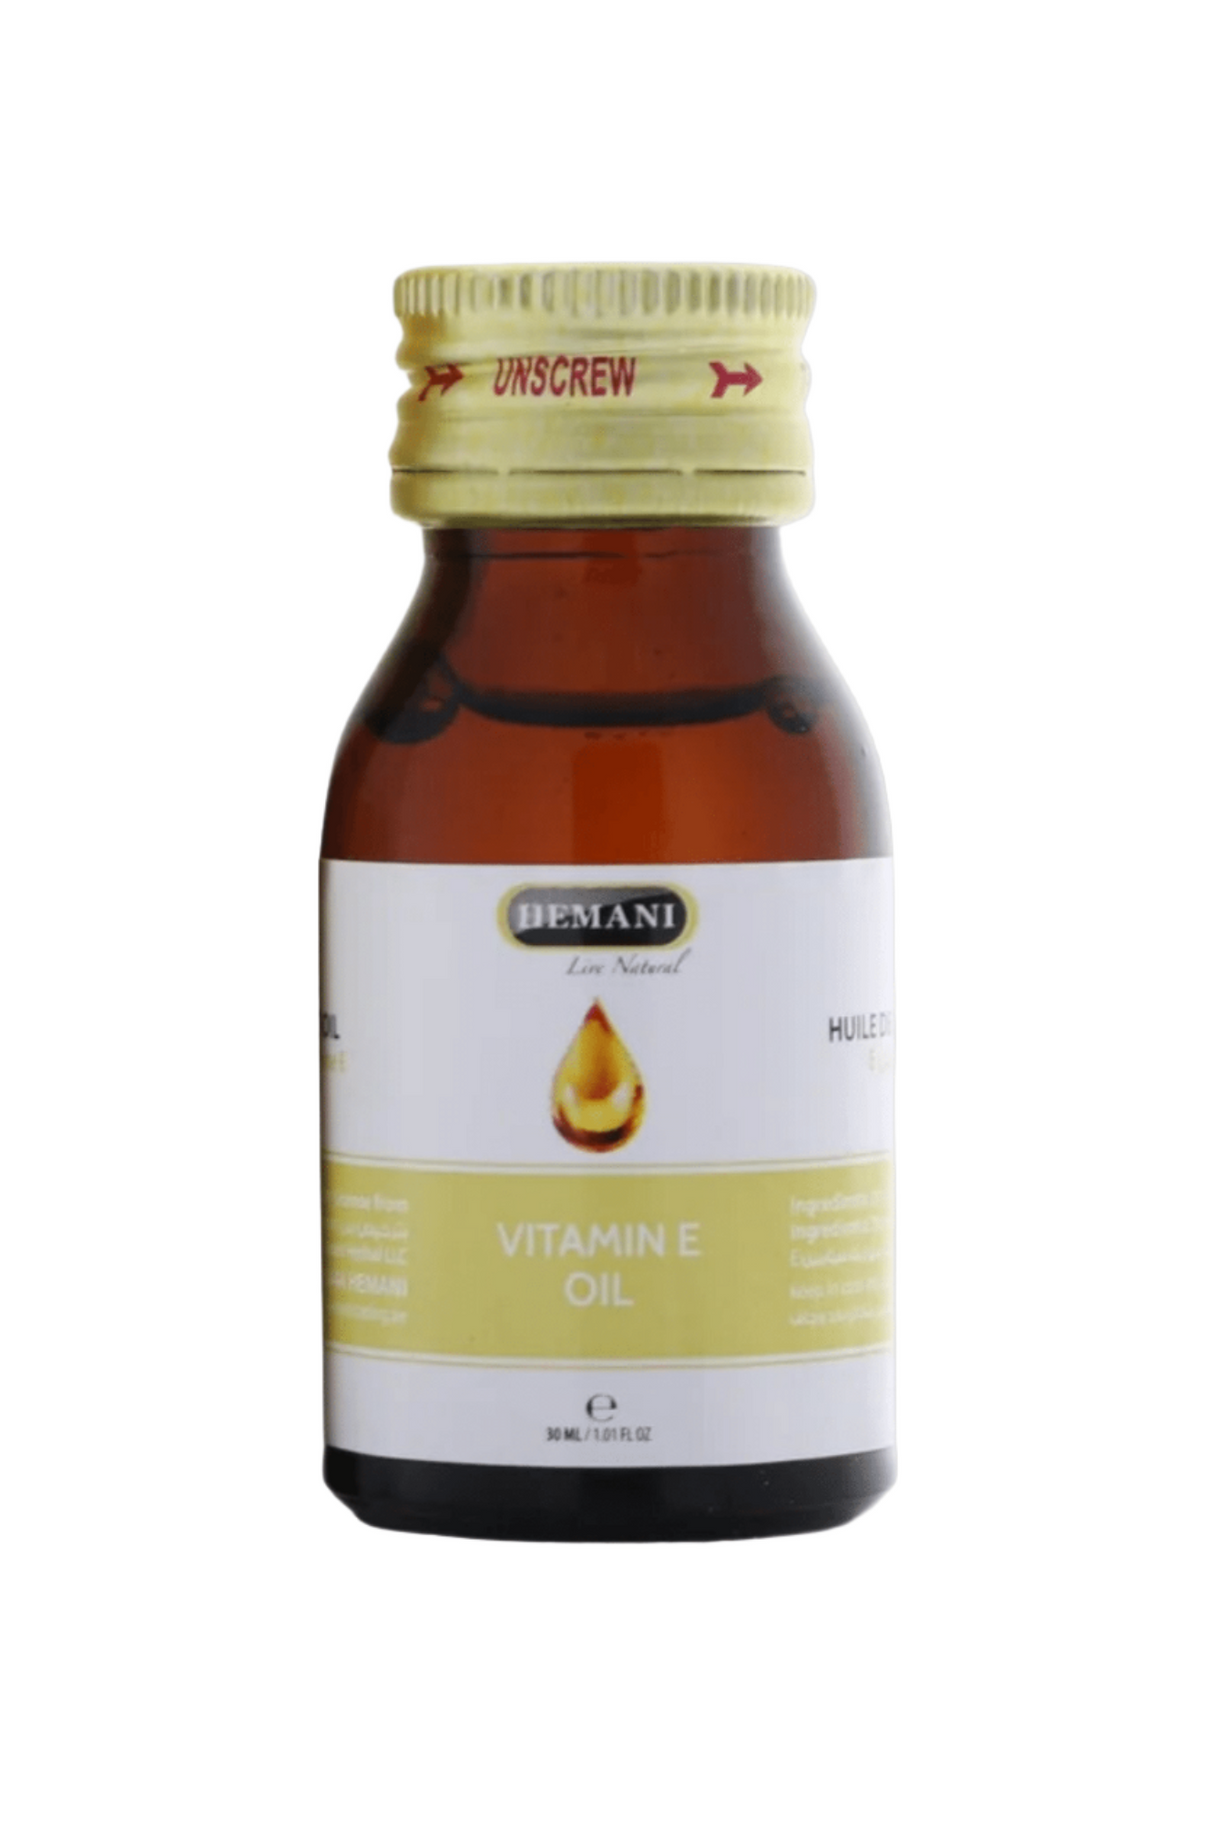 hemani vitamin e oil 30ml